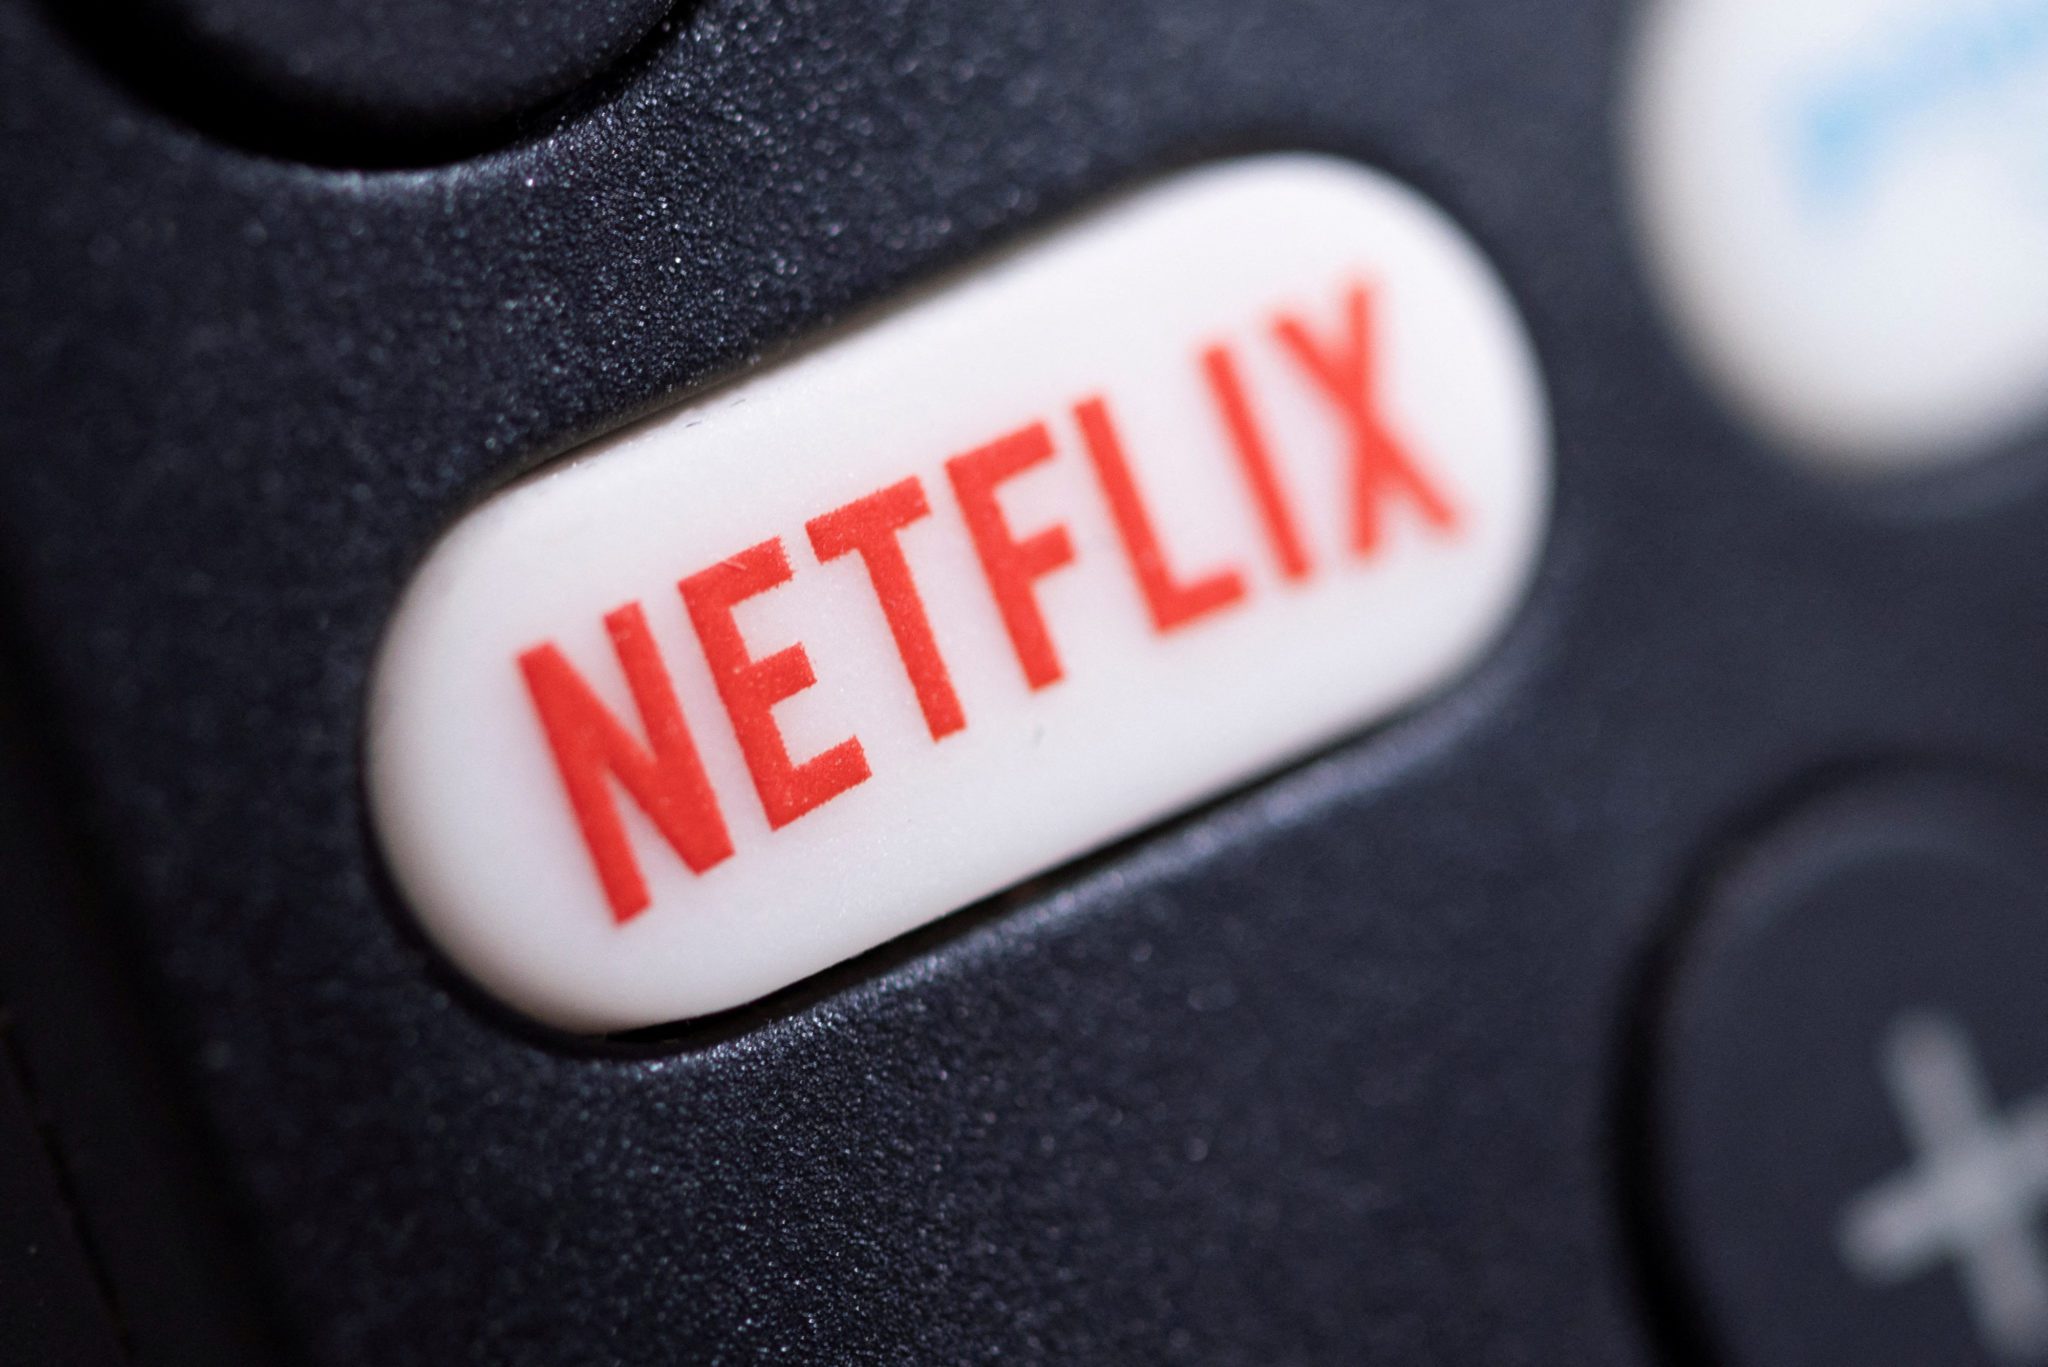 Netflix encerra plano básico nos EUA e Reino Unido